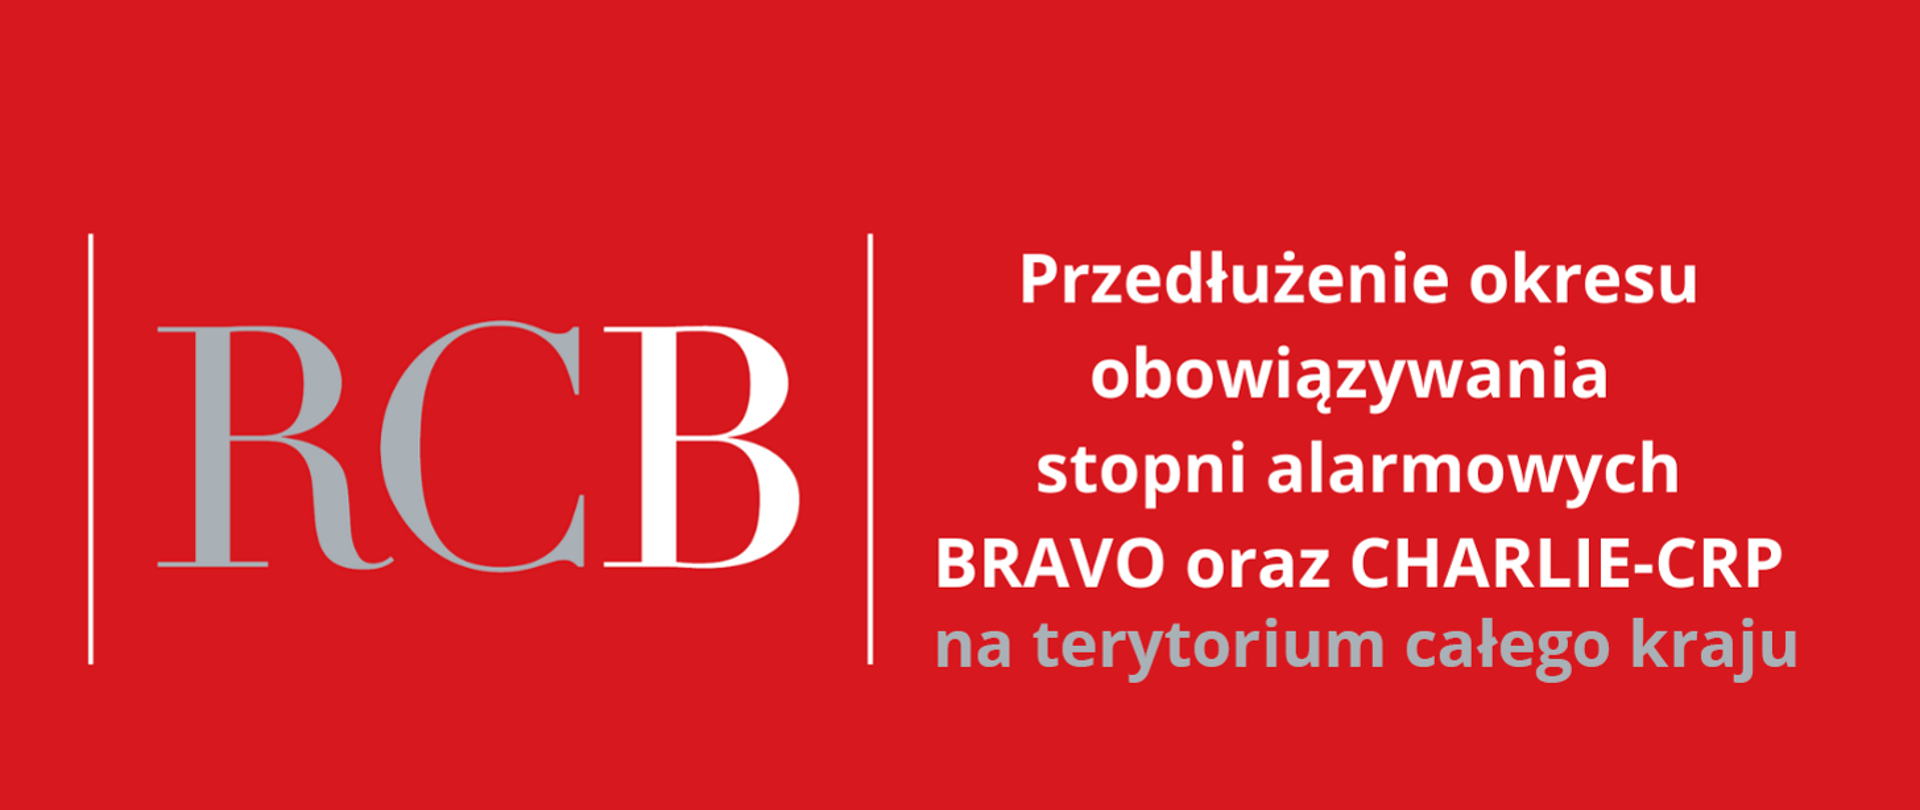 Tablica informacyjna, na czerwonym tle - po lewej stronie dużą czcionką: "RCB", po prawej stronie informacja:"Przedłużenie okresu obowiązywania stopni alarmowych BRAVO oraz CHARLIE-CRP na terytorium całego kraju